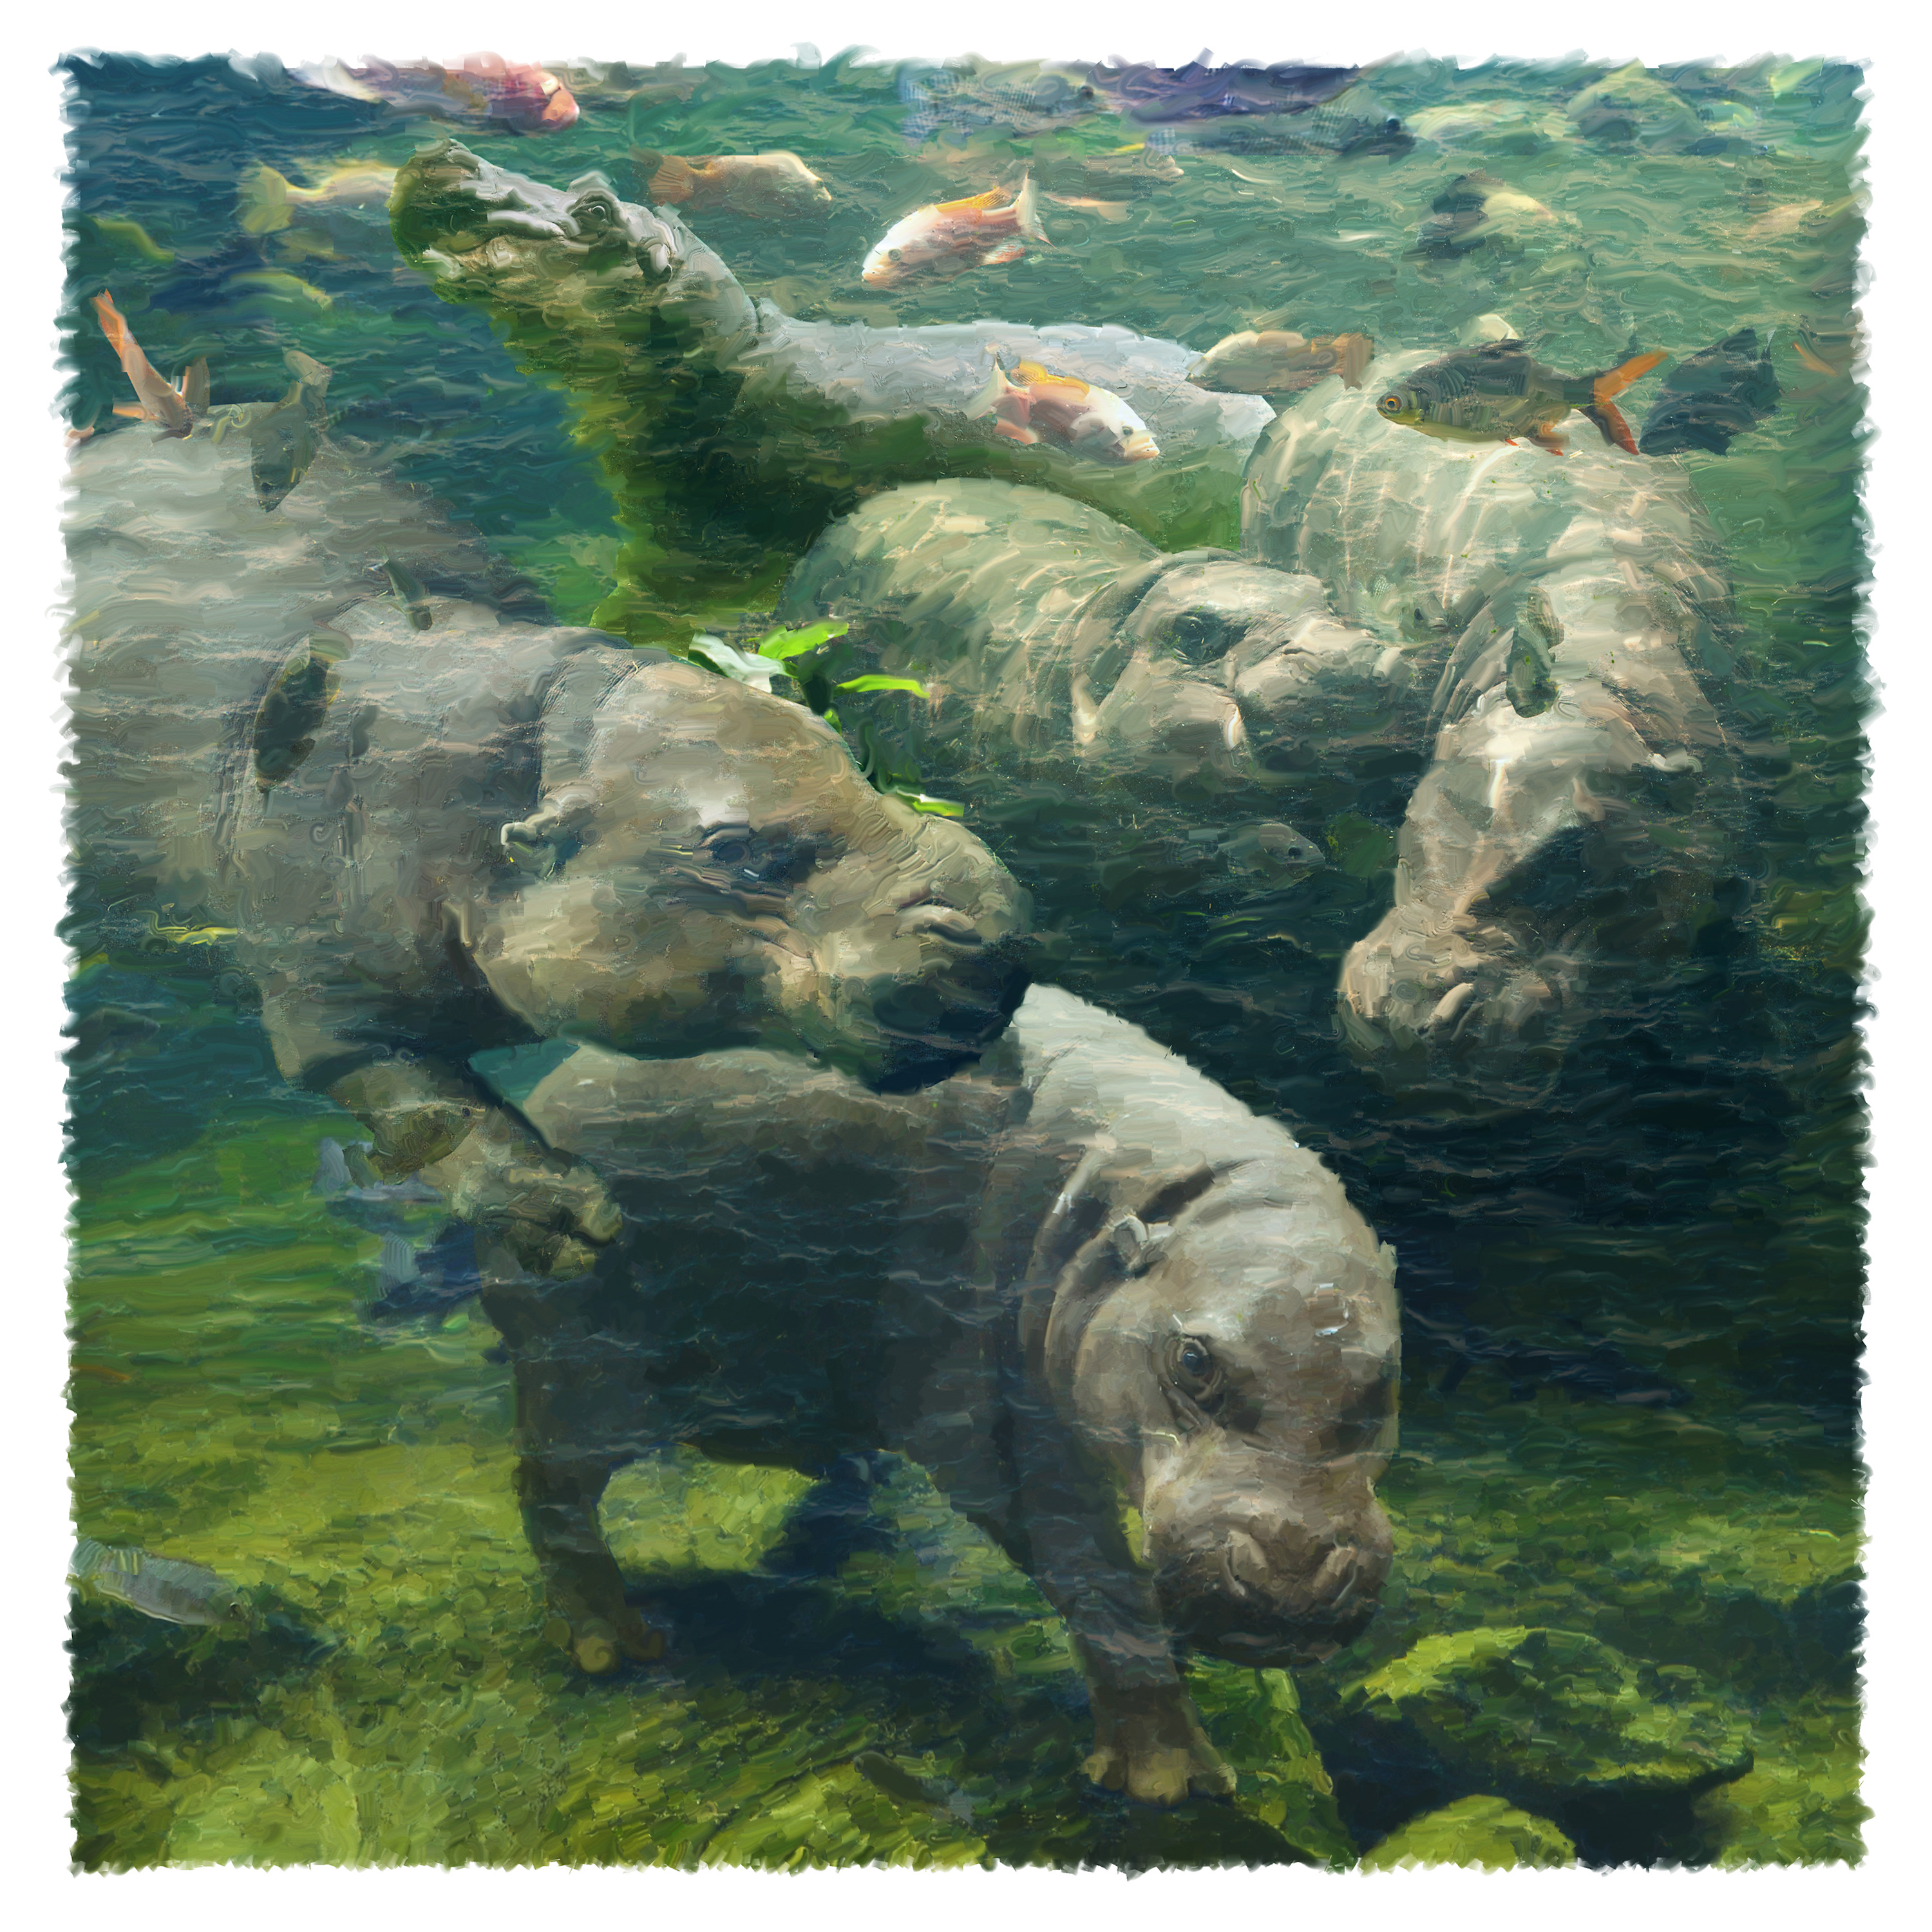 Water ballet hippos dthfsr